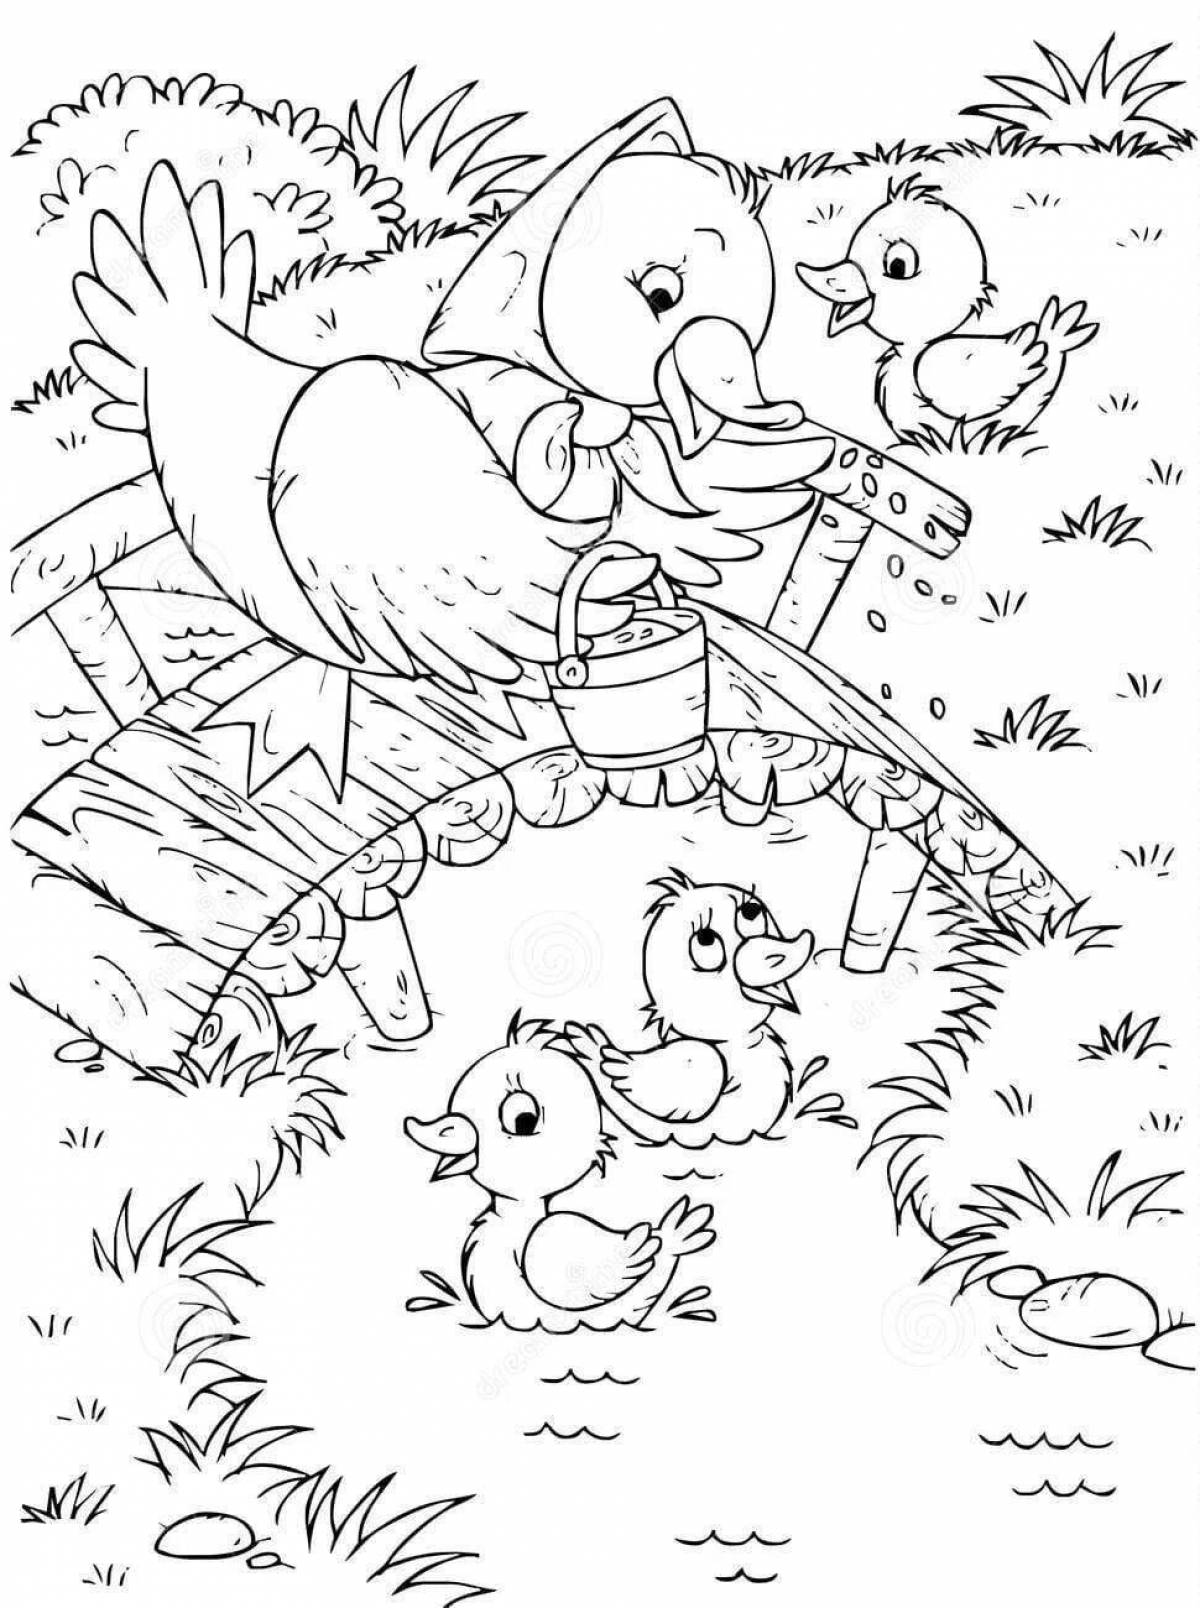 Великолепная страница раскраски птичьего двора для учеников